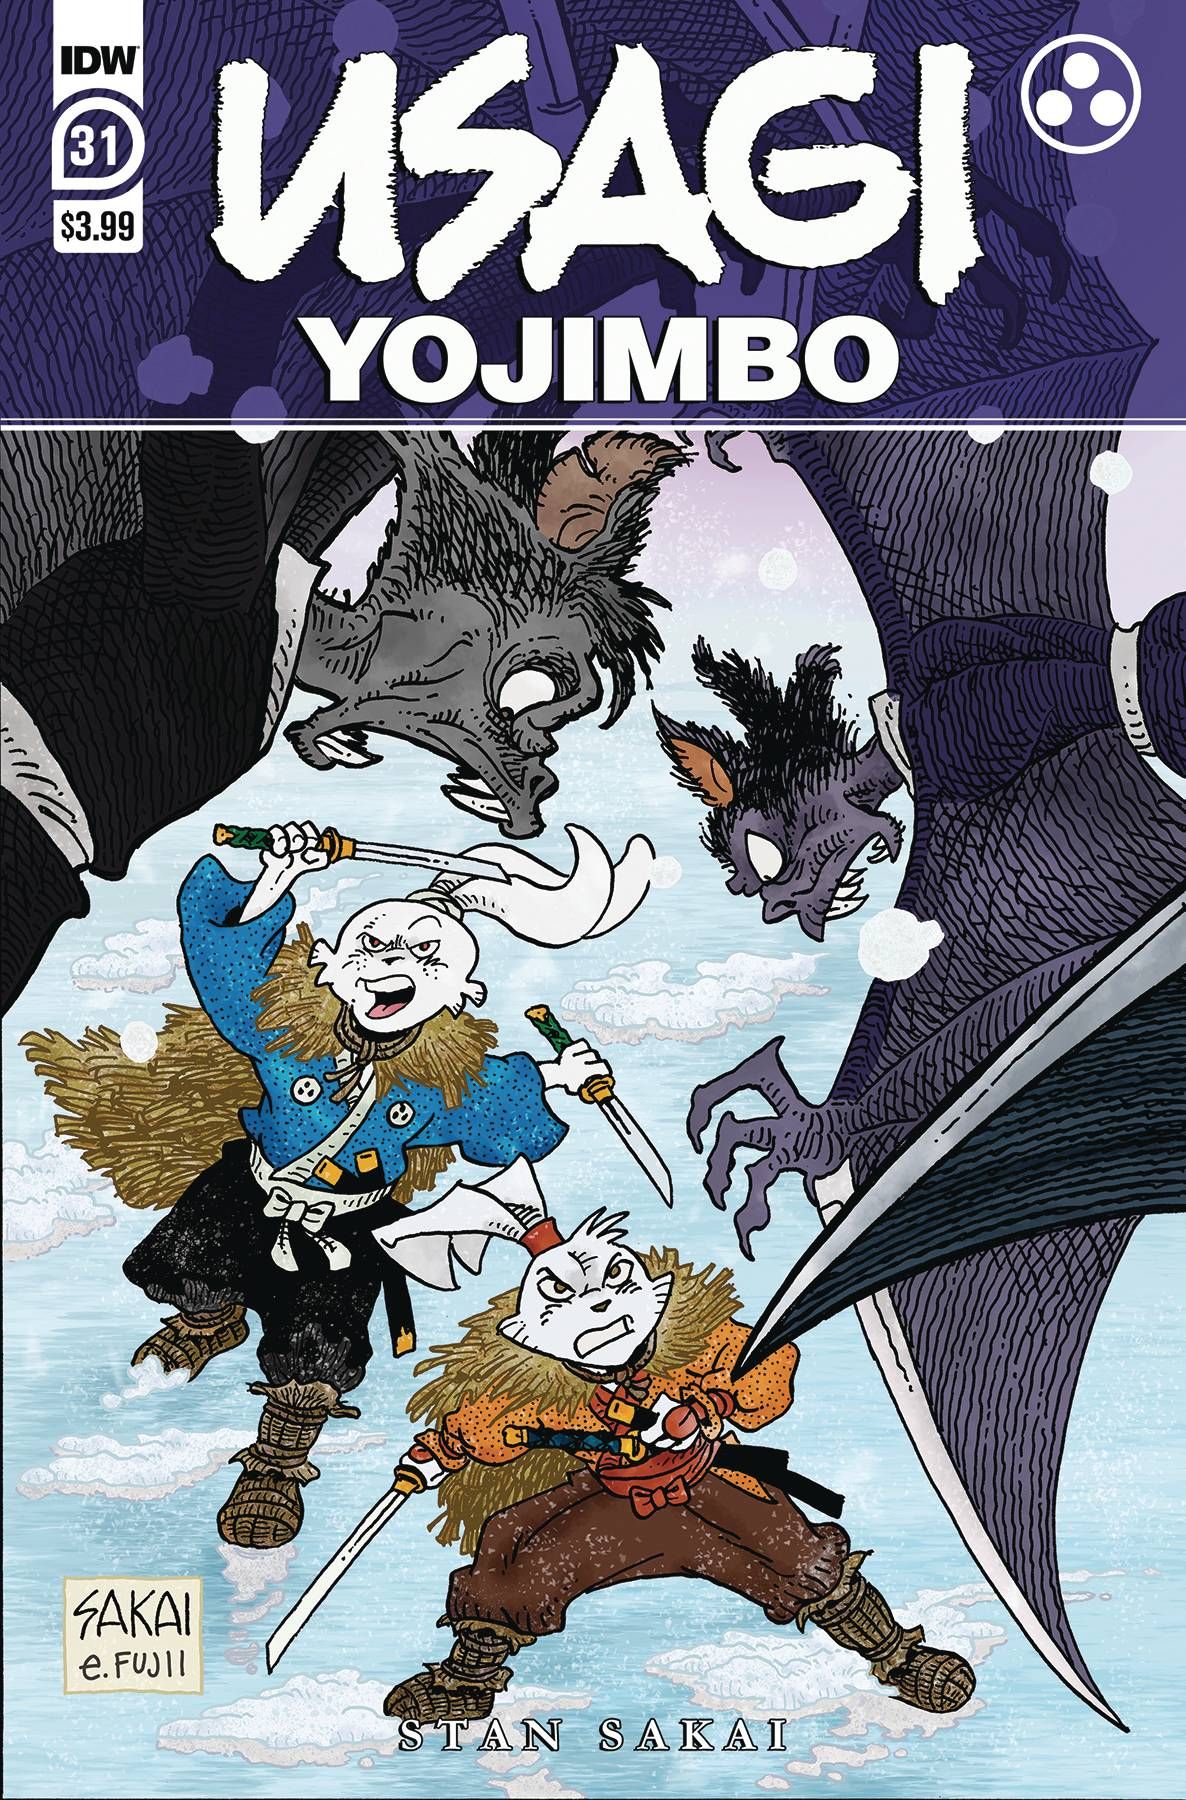 Usagi Yojimbo #31 Comic